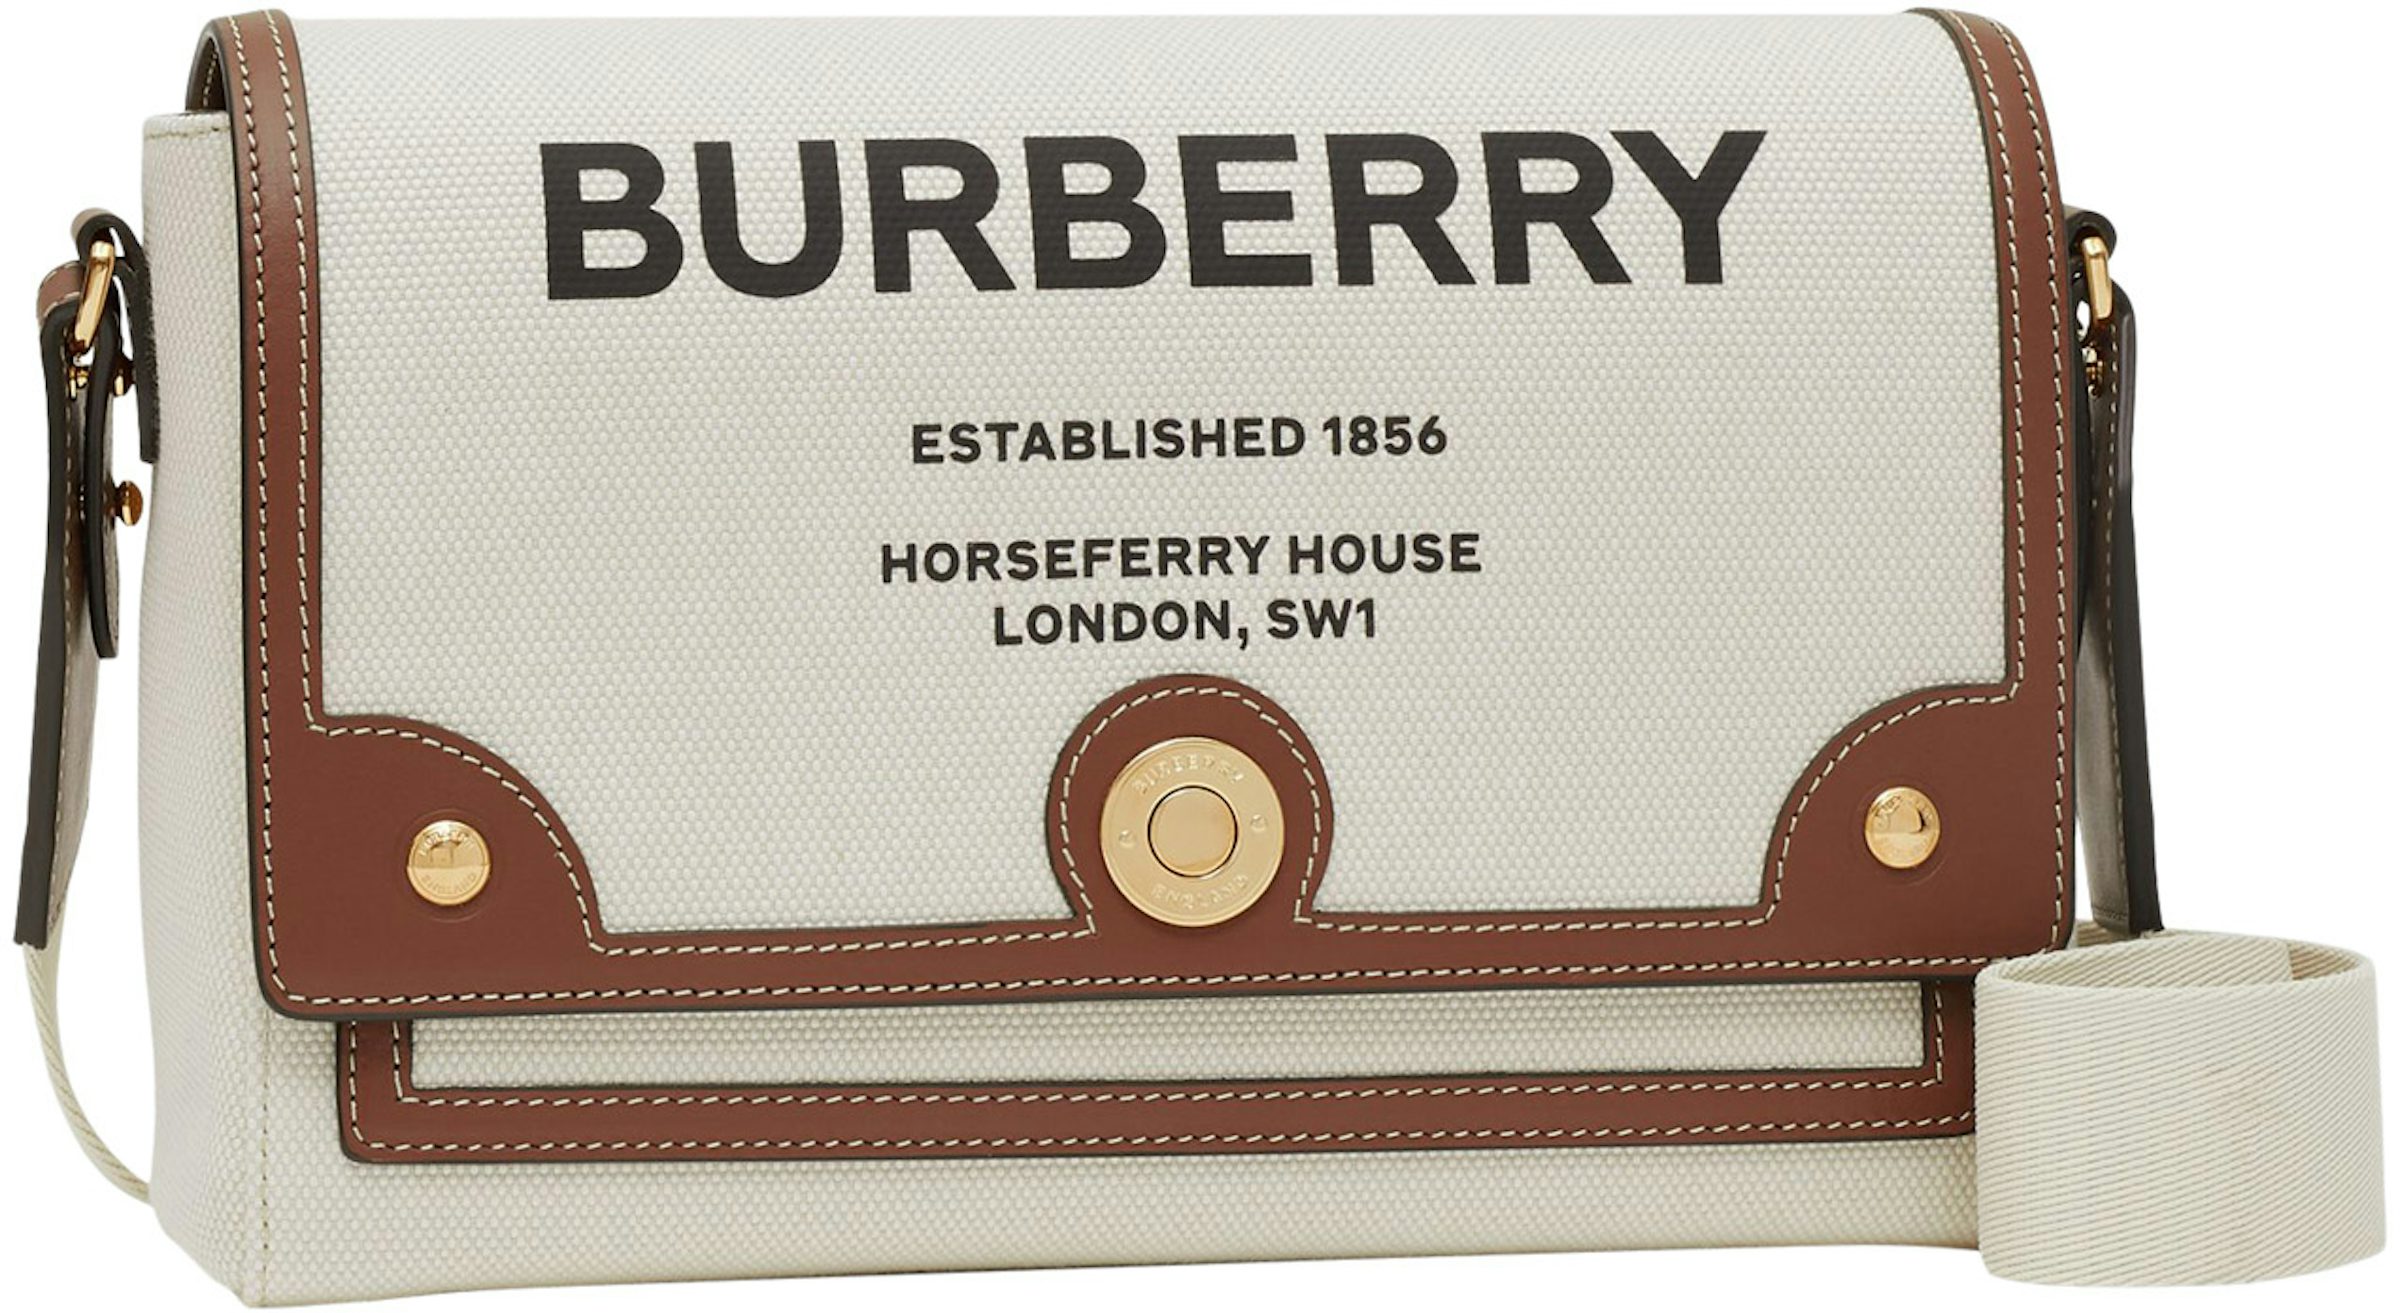 authenic Burberry speedy bag